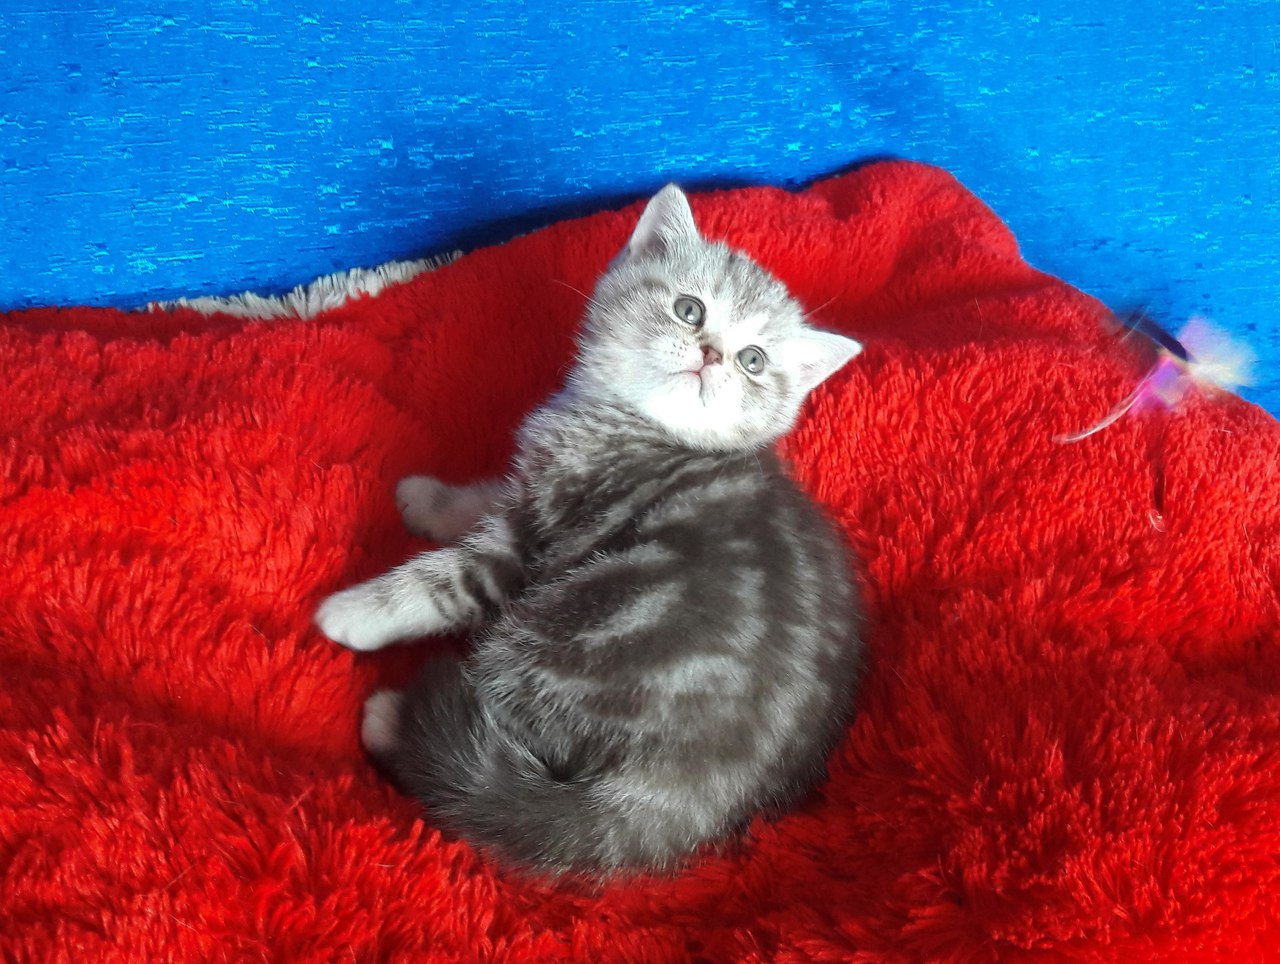 Купить британского котенка девочку окраса шоколадный серебристый мраморный BRI bs 22 в питомнике в Минске